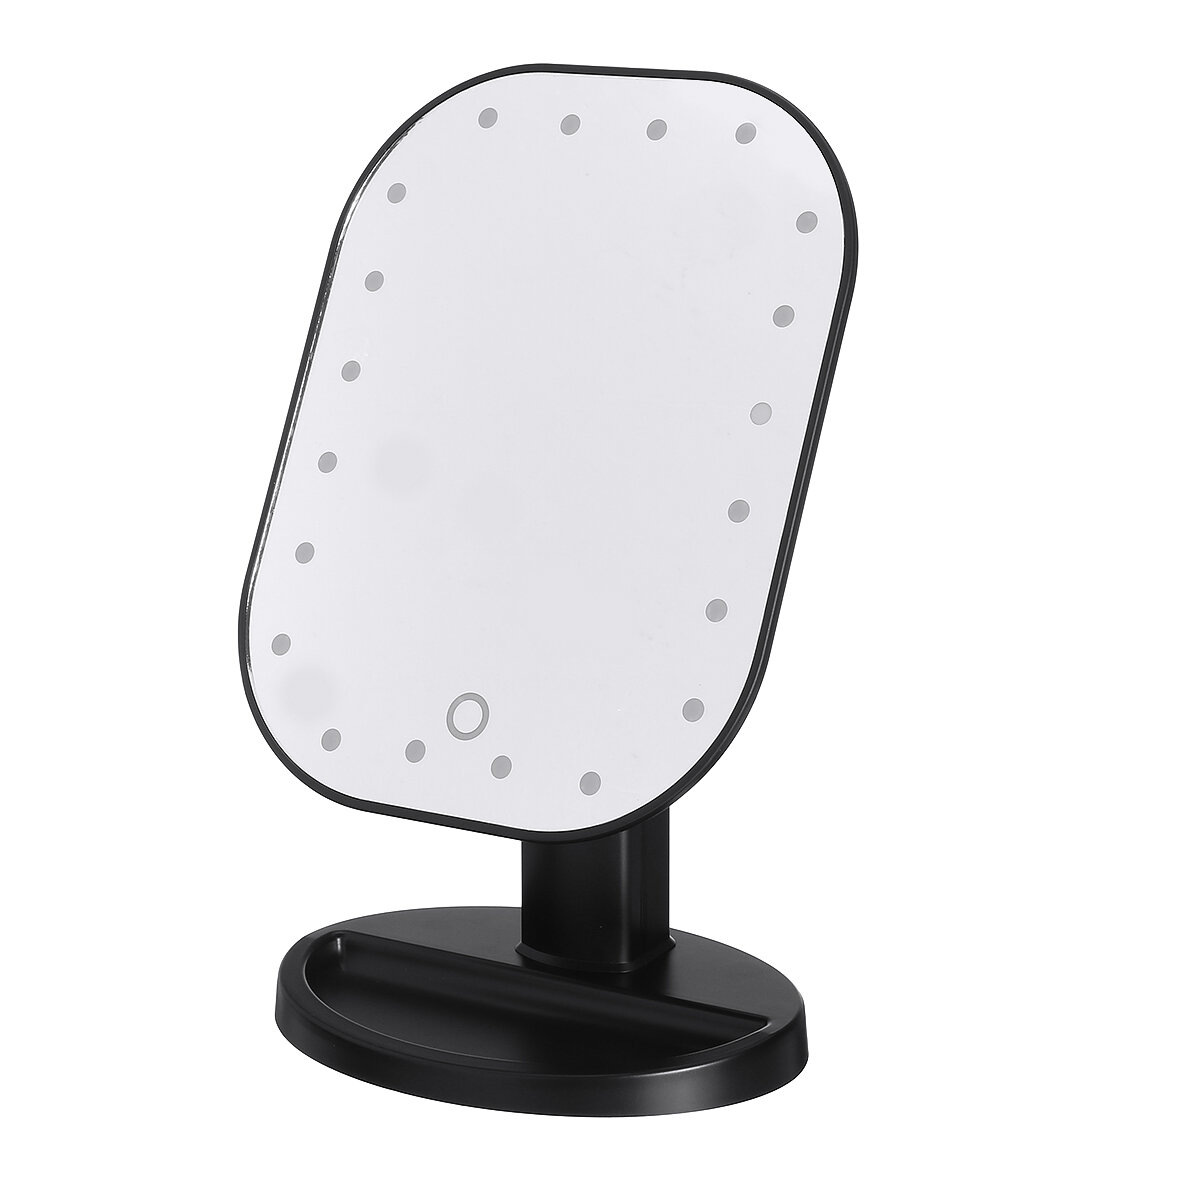 

Питание от аккумулятора 20 LED Макияж Зеркальный свет Рабочий стол для дома Сенсорный экран 180 ° Регулируемый угол Зерк